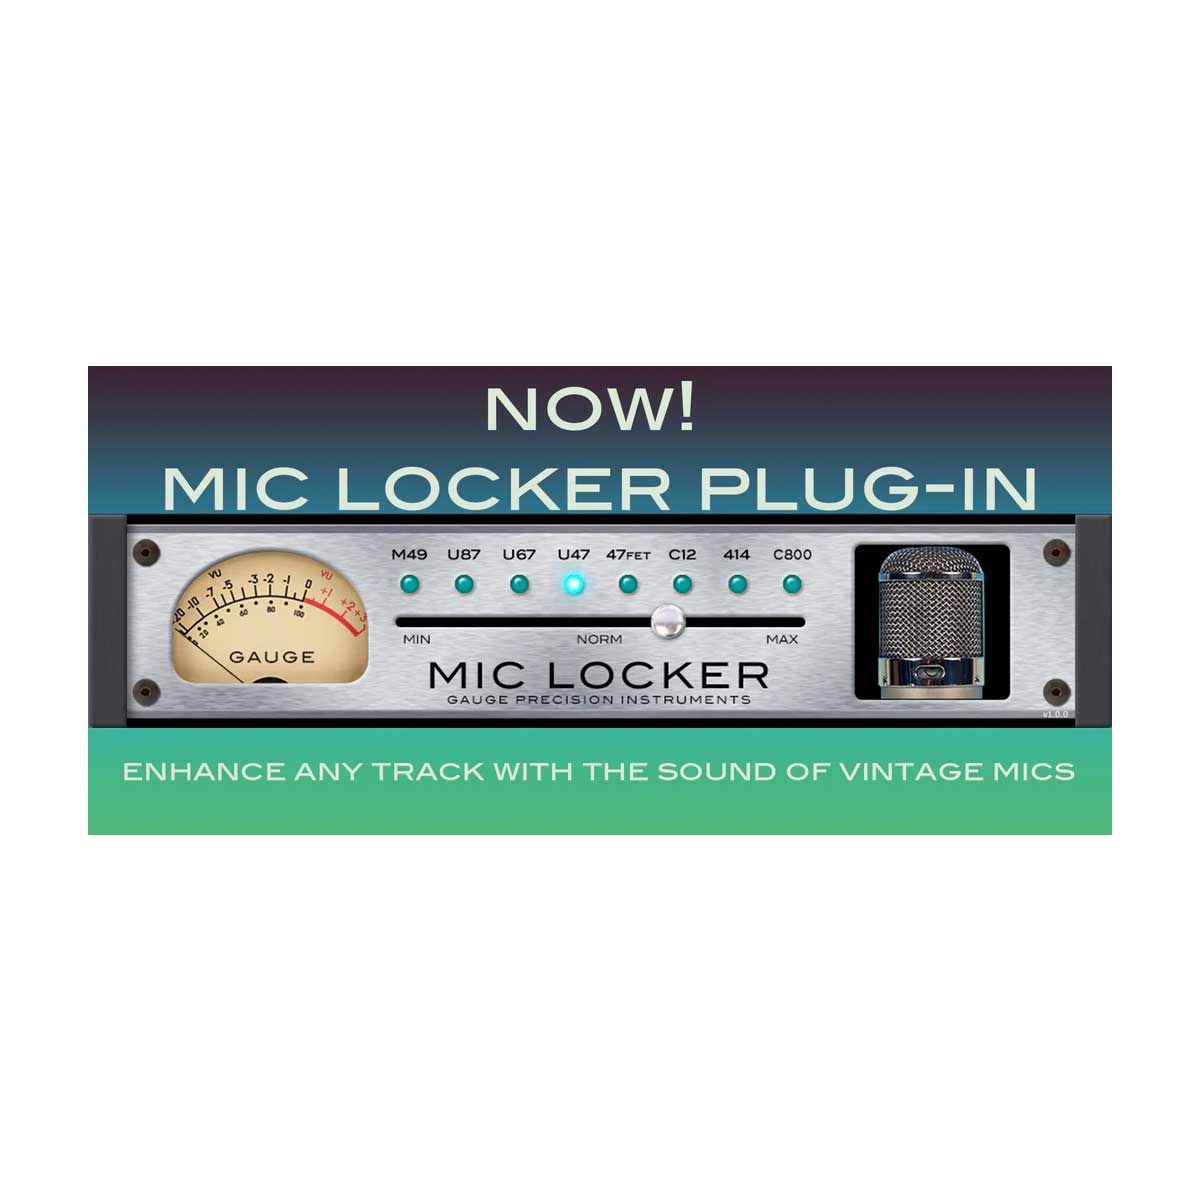 Gauge Mic Locker Plug-In (Serial Nr + Download)